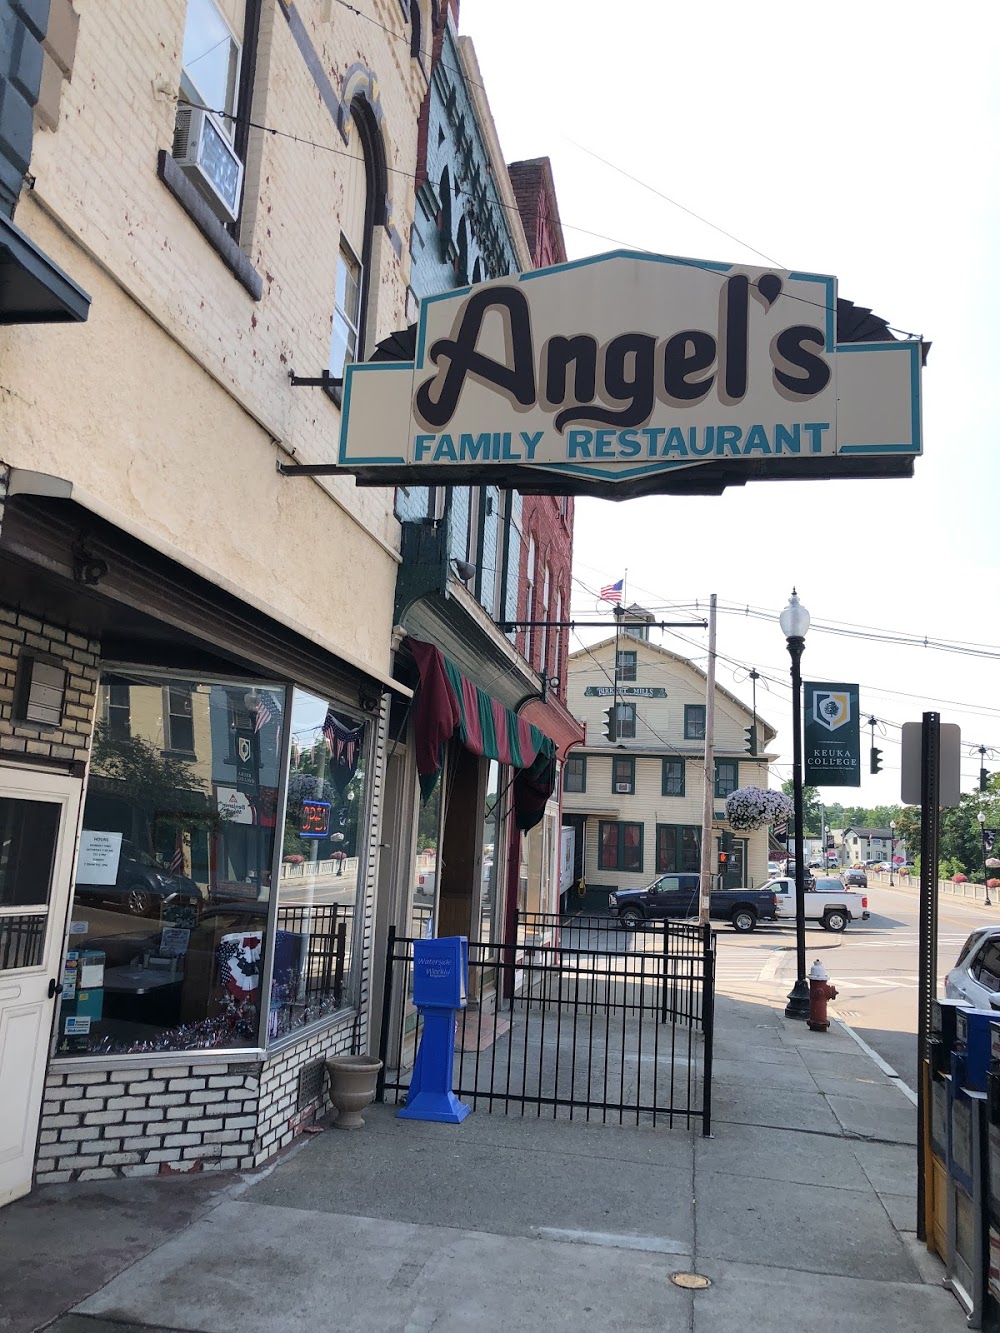 Angel’s Family Restaurant